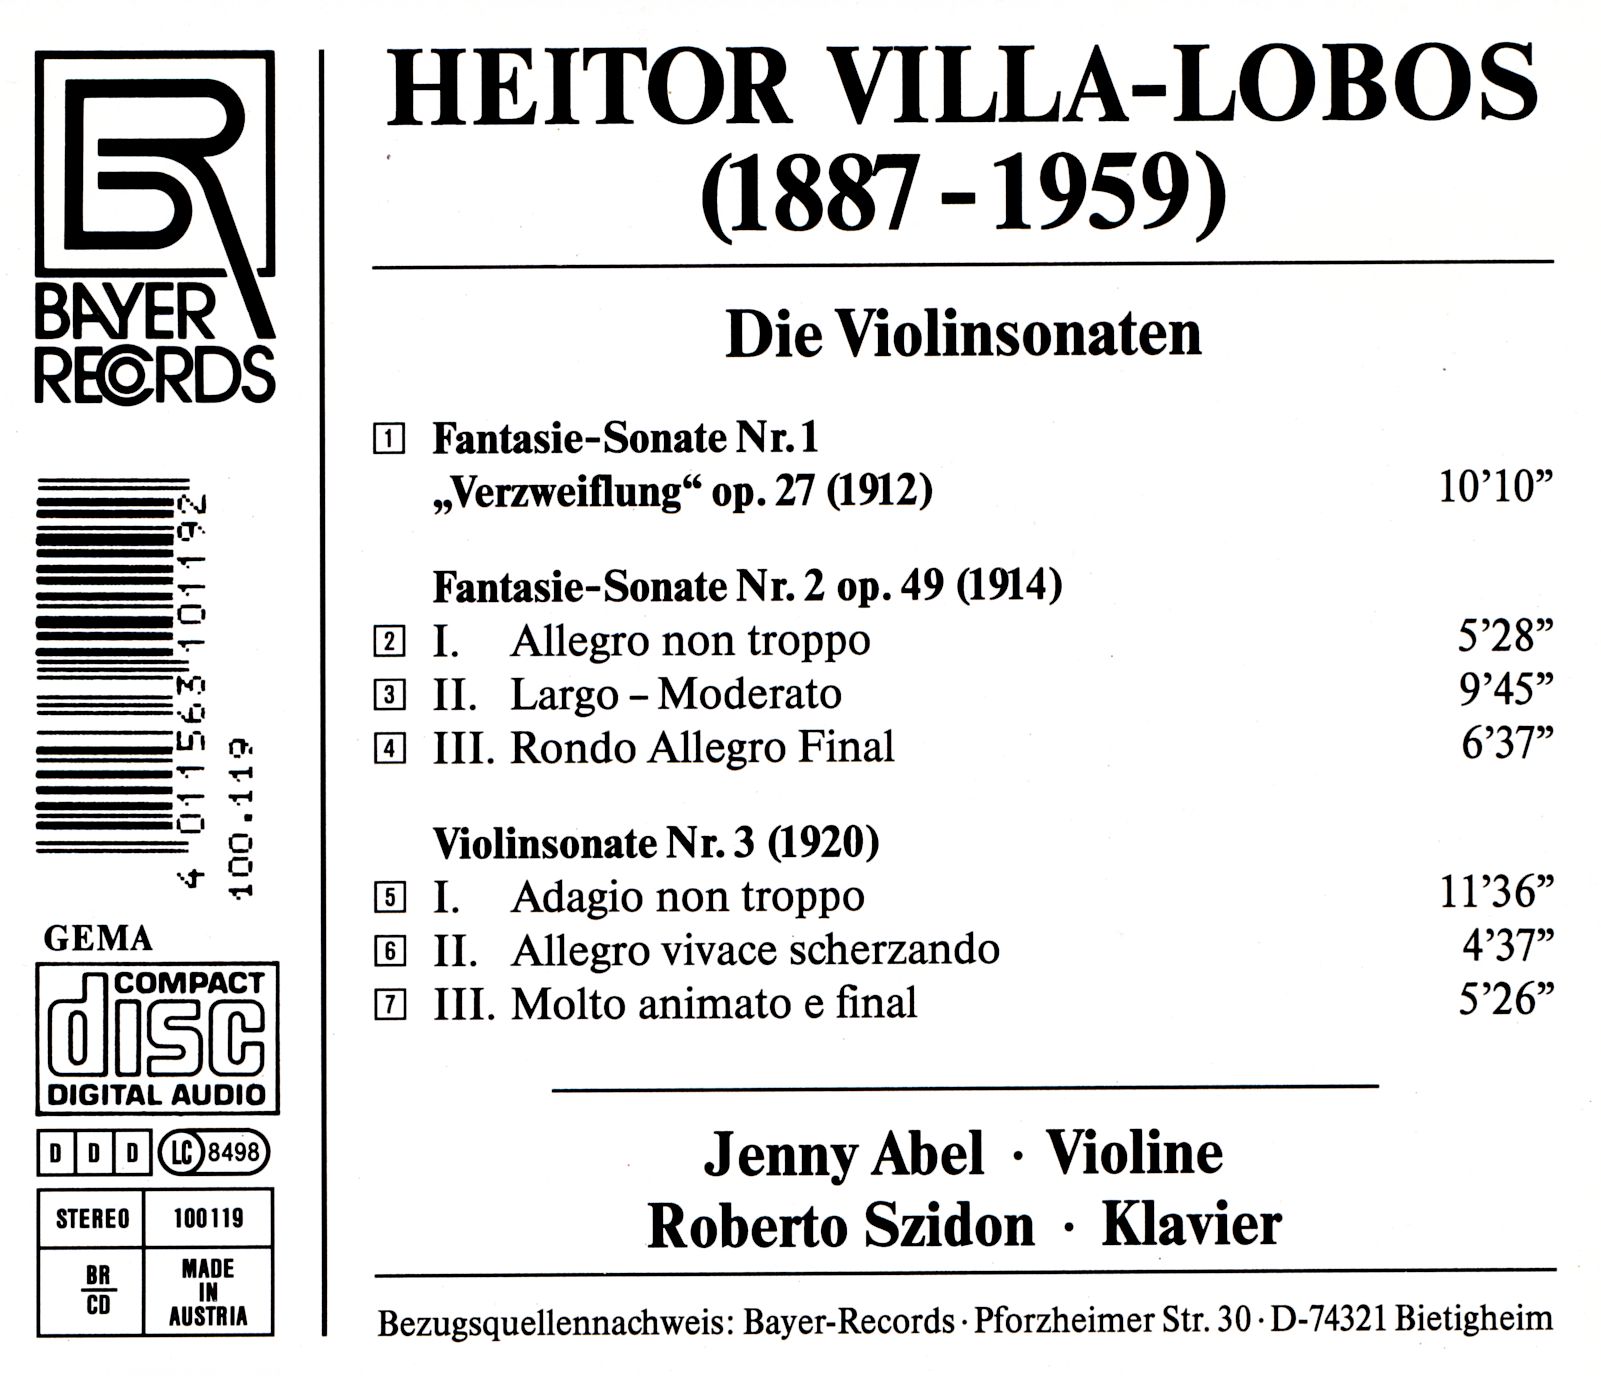 Heitor Villa-Lobos - Die Violinsonaten